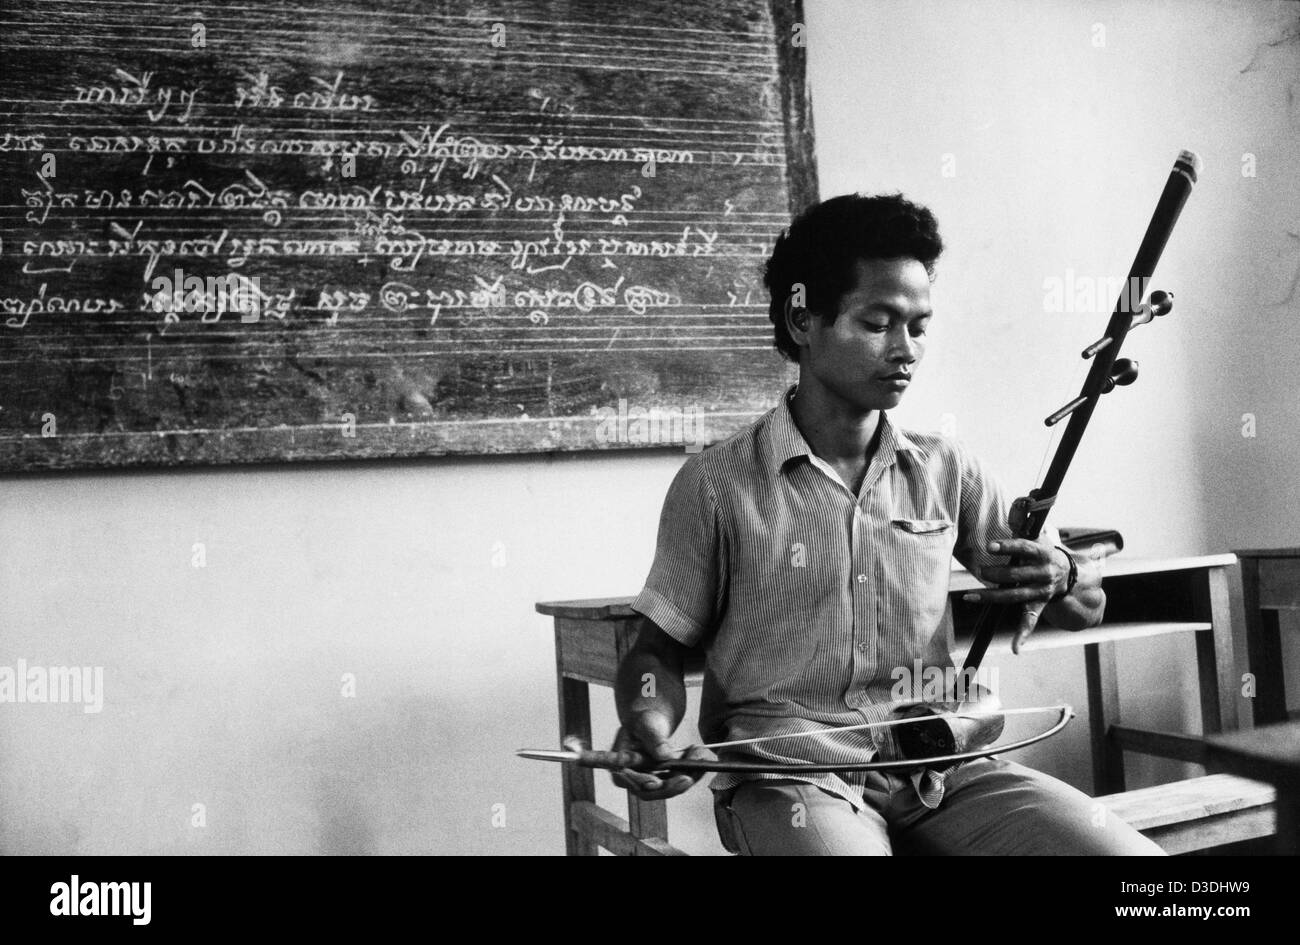 Cambogia: un insegnante presso la Scuola di Belle Arti di Phnom Penh prende una classe di musica. Foto Stock